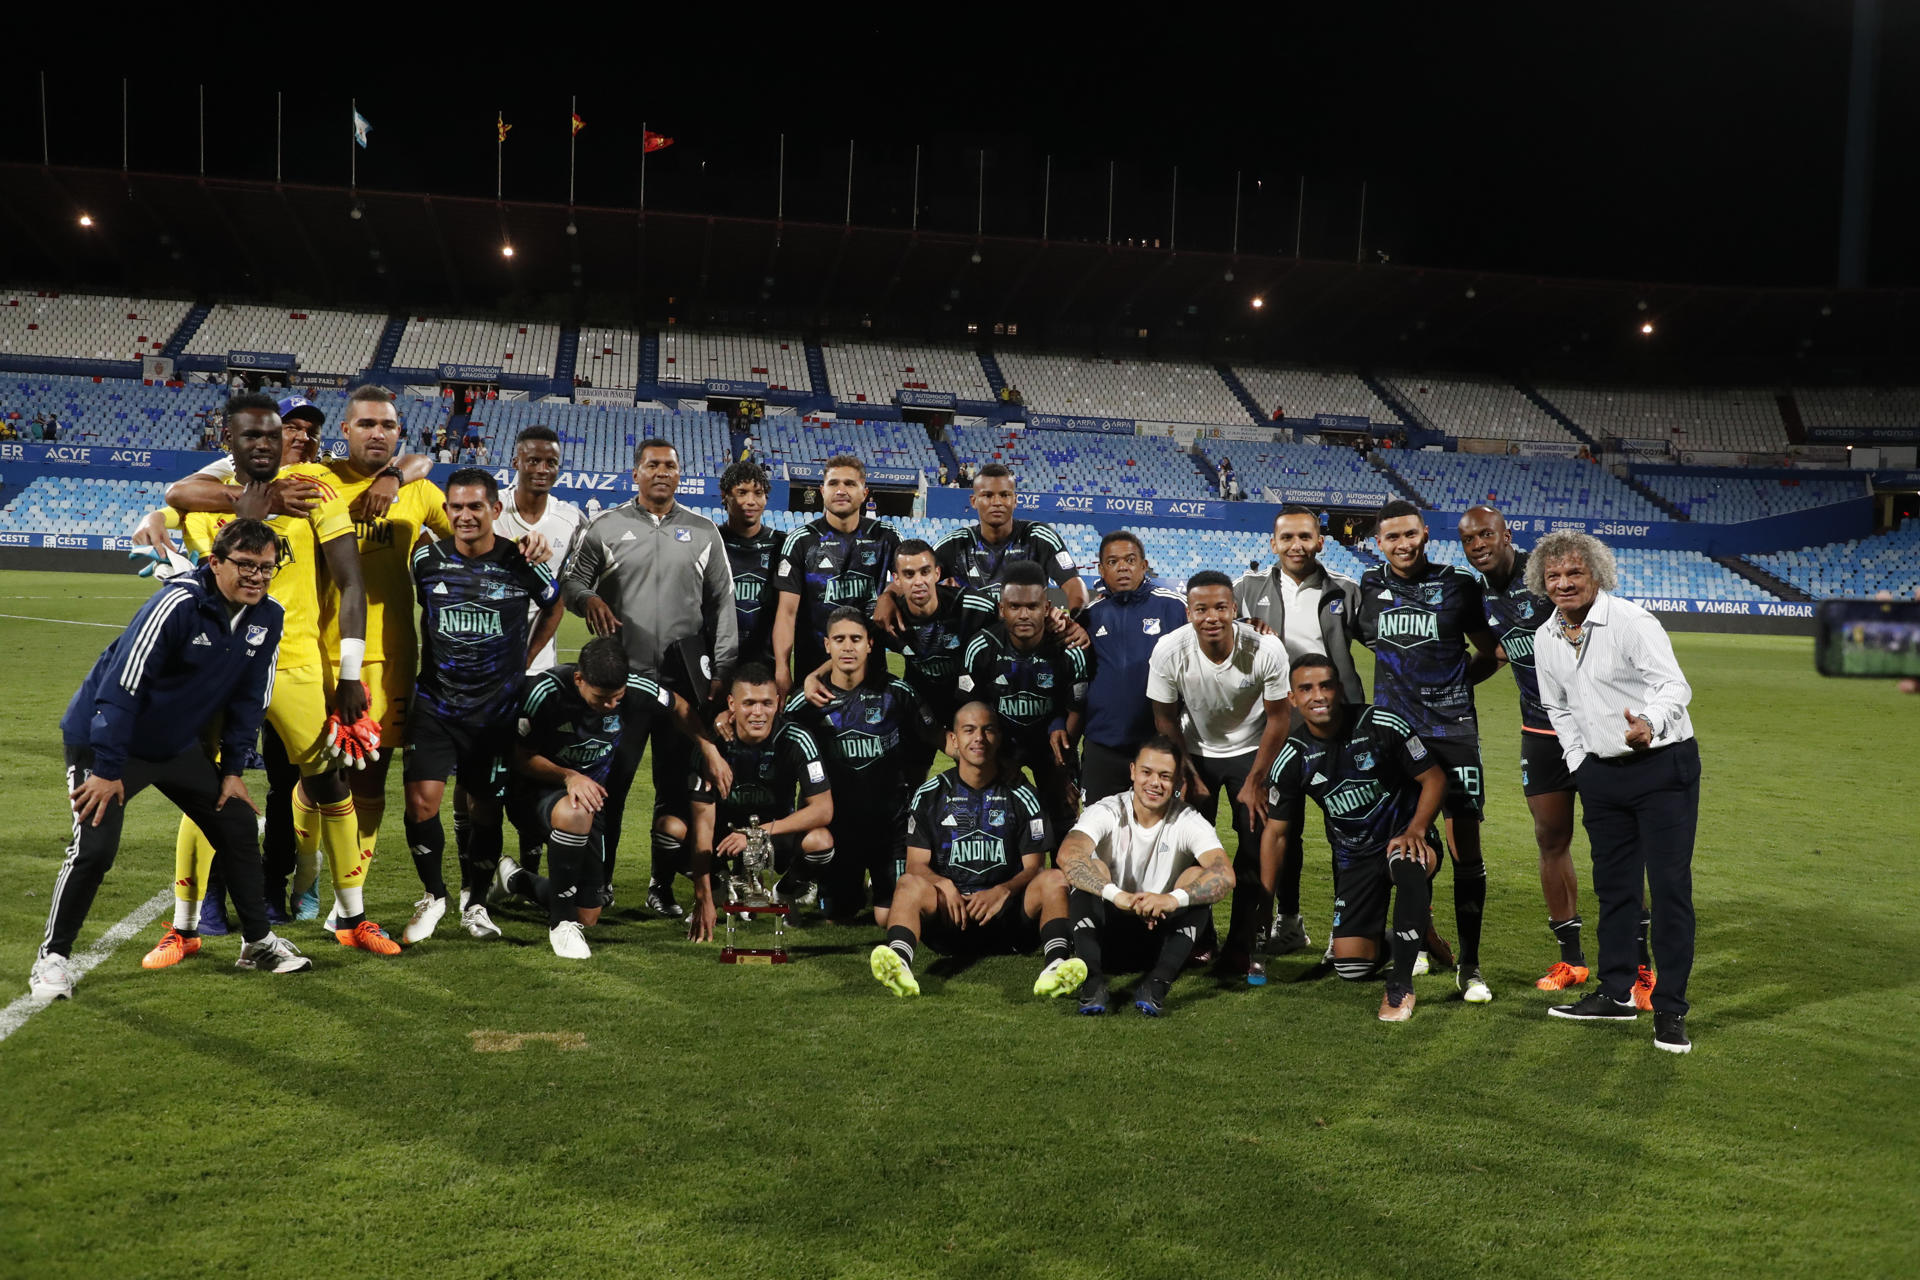 Jugadores y cuerpo técnico del club colombiano de fútbol Millonarios fueron registrados este jueves, 3 de agosto, al posar con el trofeo Carlos Lapetra, tras derrotar 1-2 en partido amistoso al Real Zaragoza, en el estadio de La Romareda, en Zaragoza (España). EFE/JAVIER BELVER